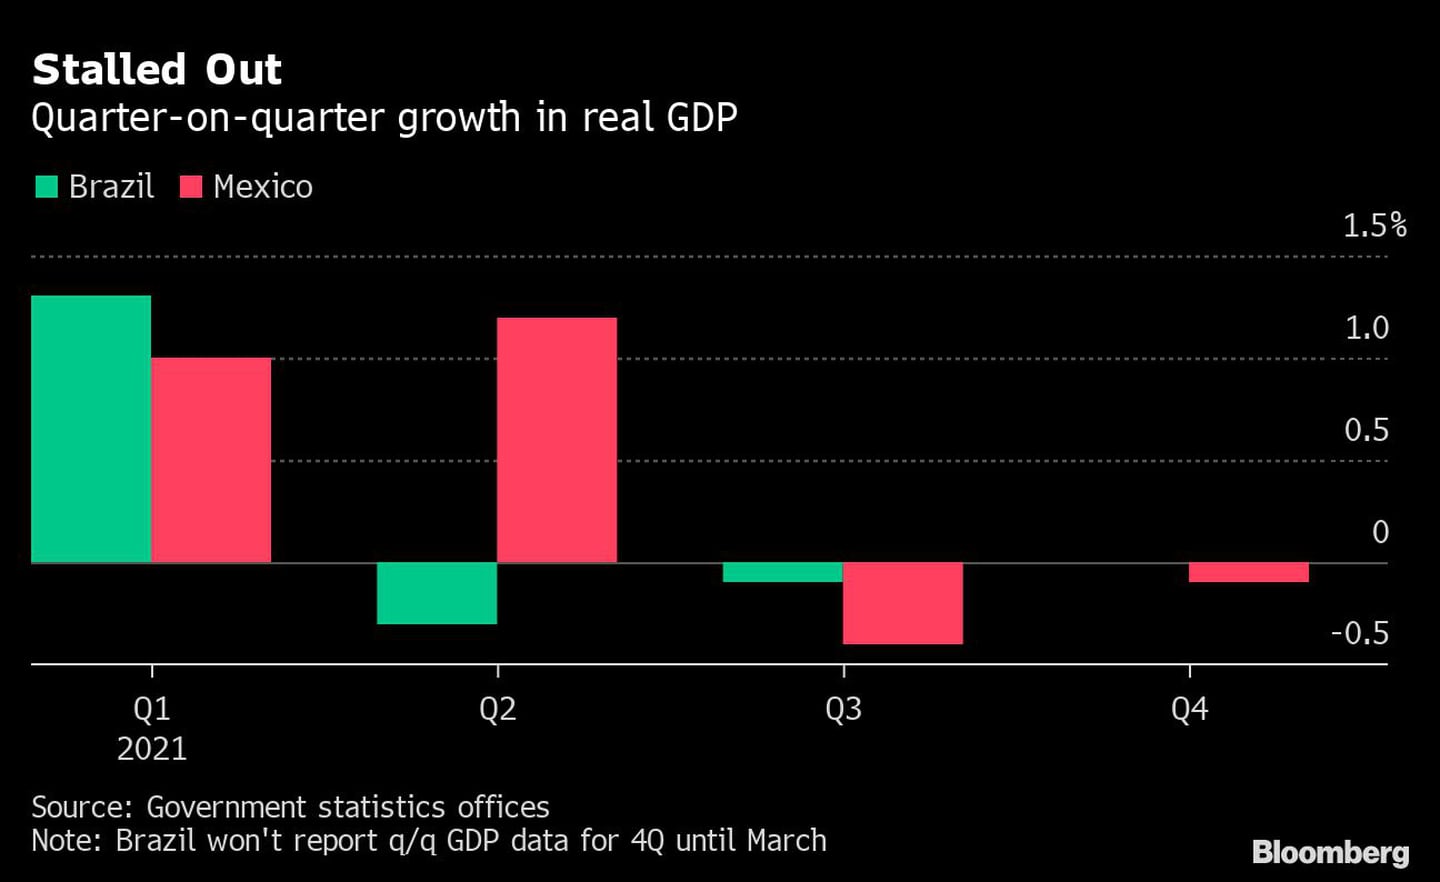 Crescimento real do PIB das economias mexicana e brasileira a cada trimestredfd